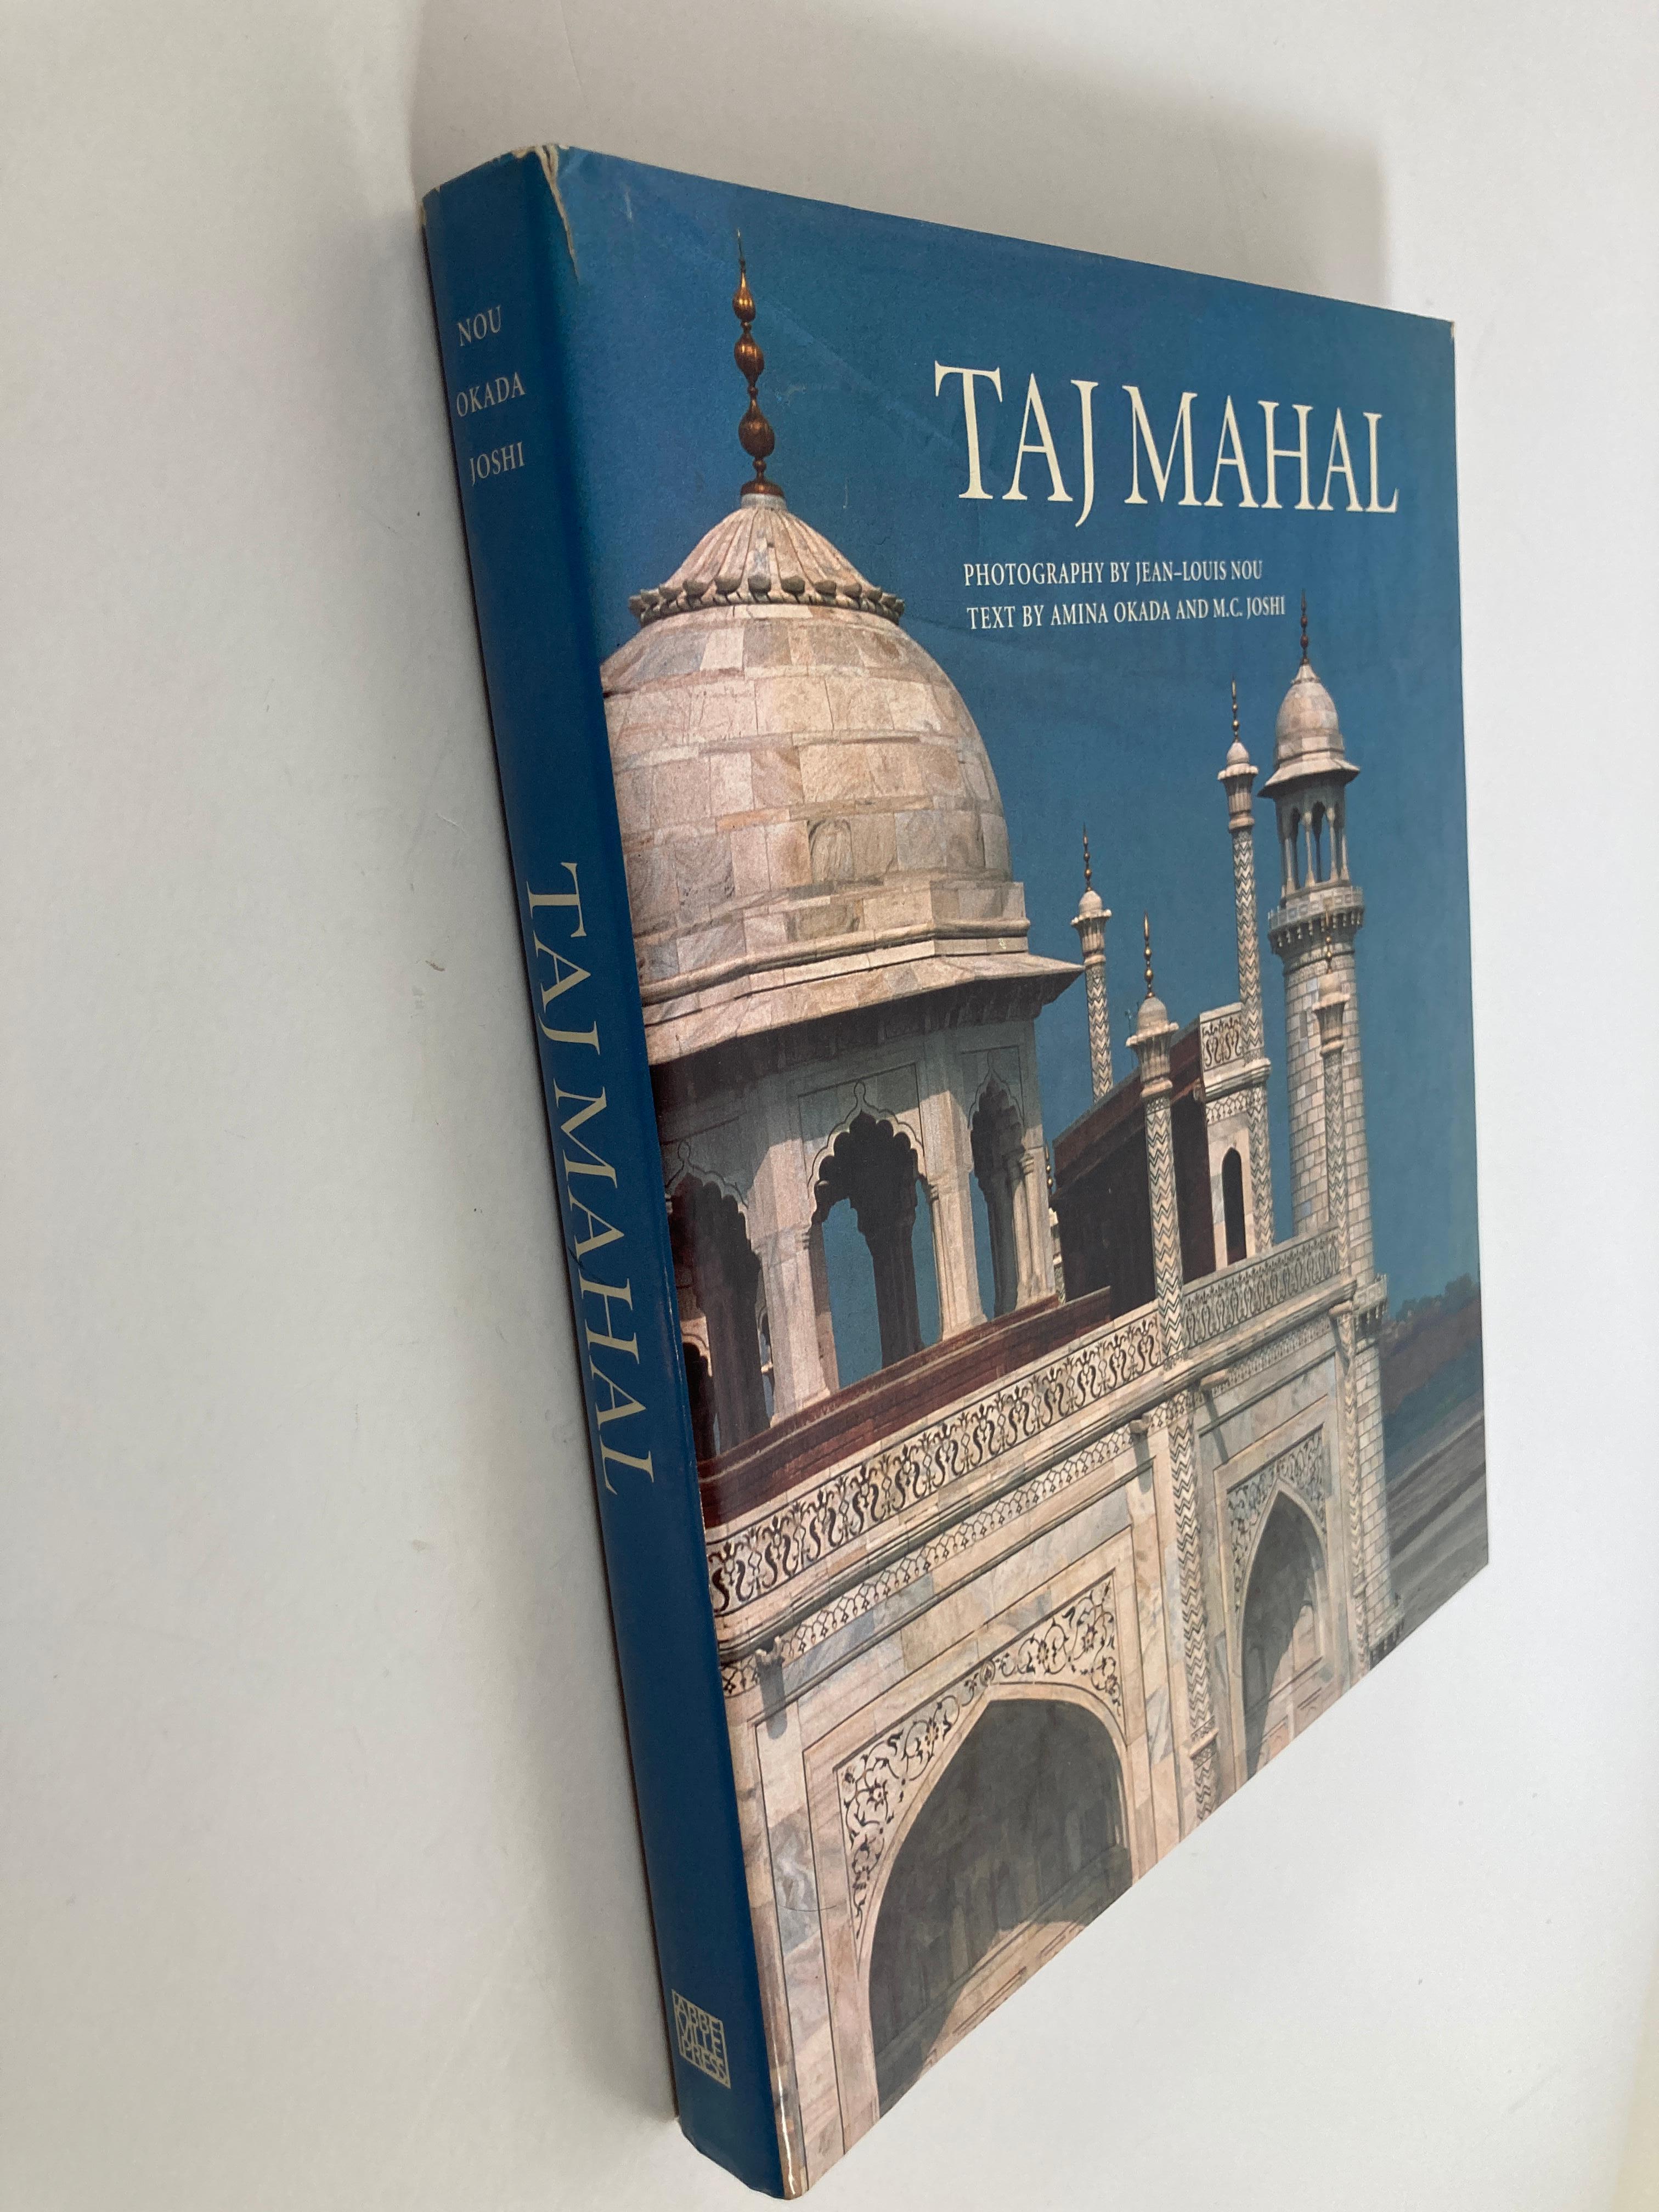 where is the taj mahal book